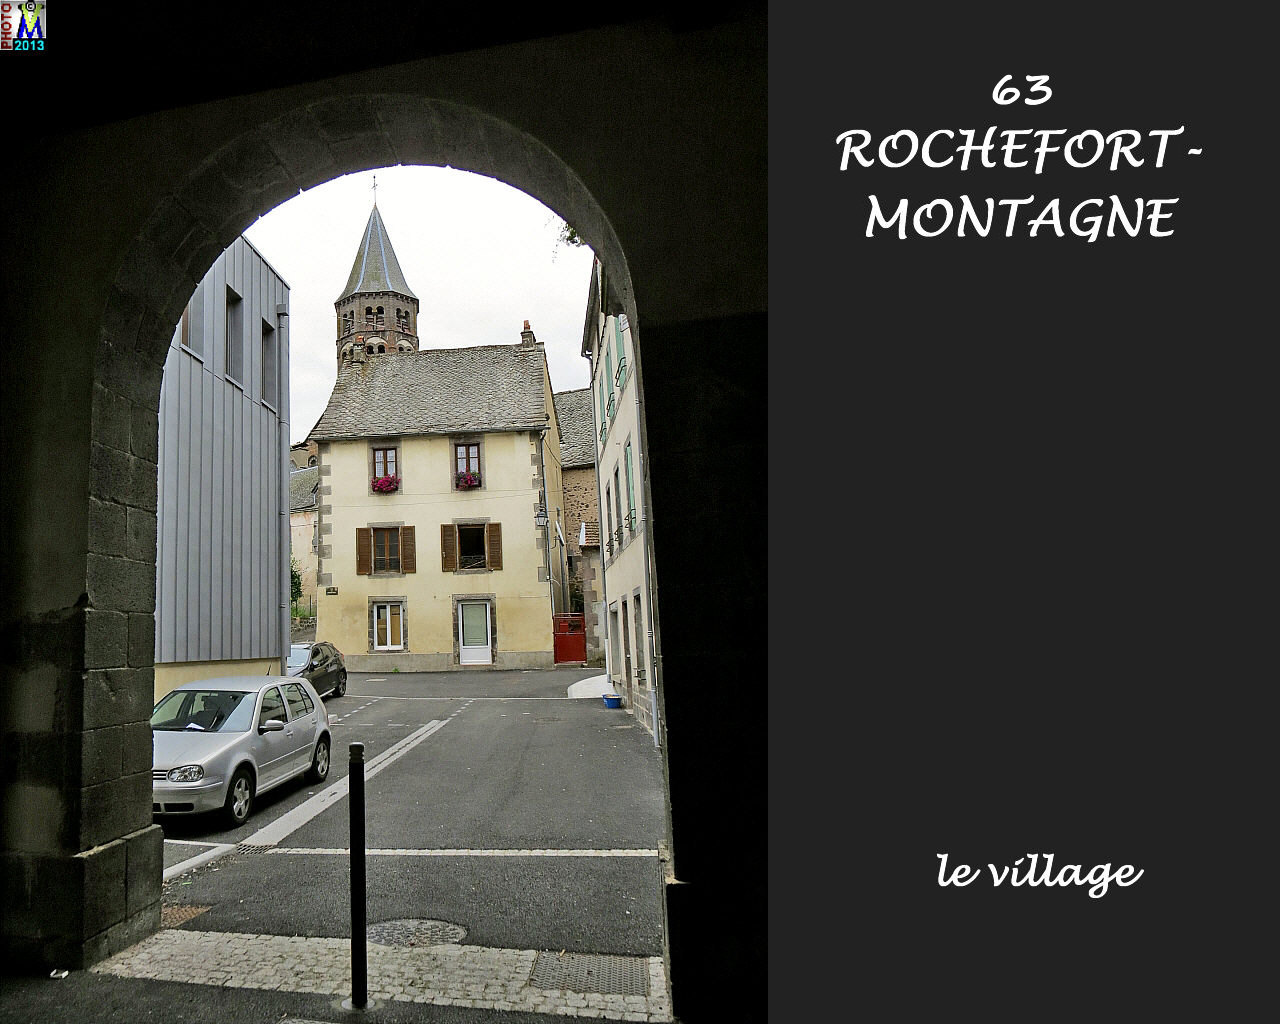 63ROCHEFORT-MONTAGNE_village_100.jpg